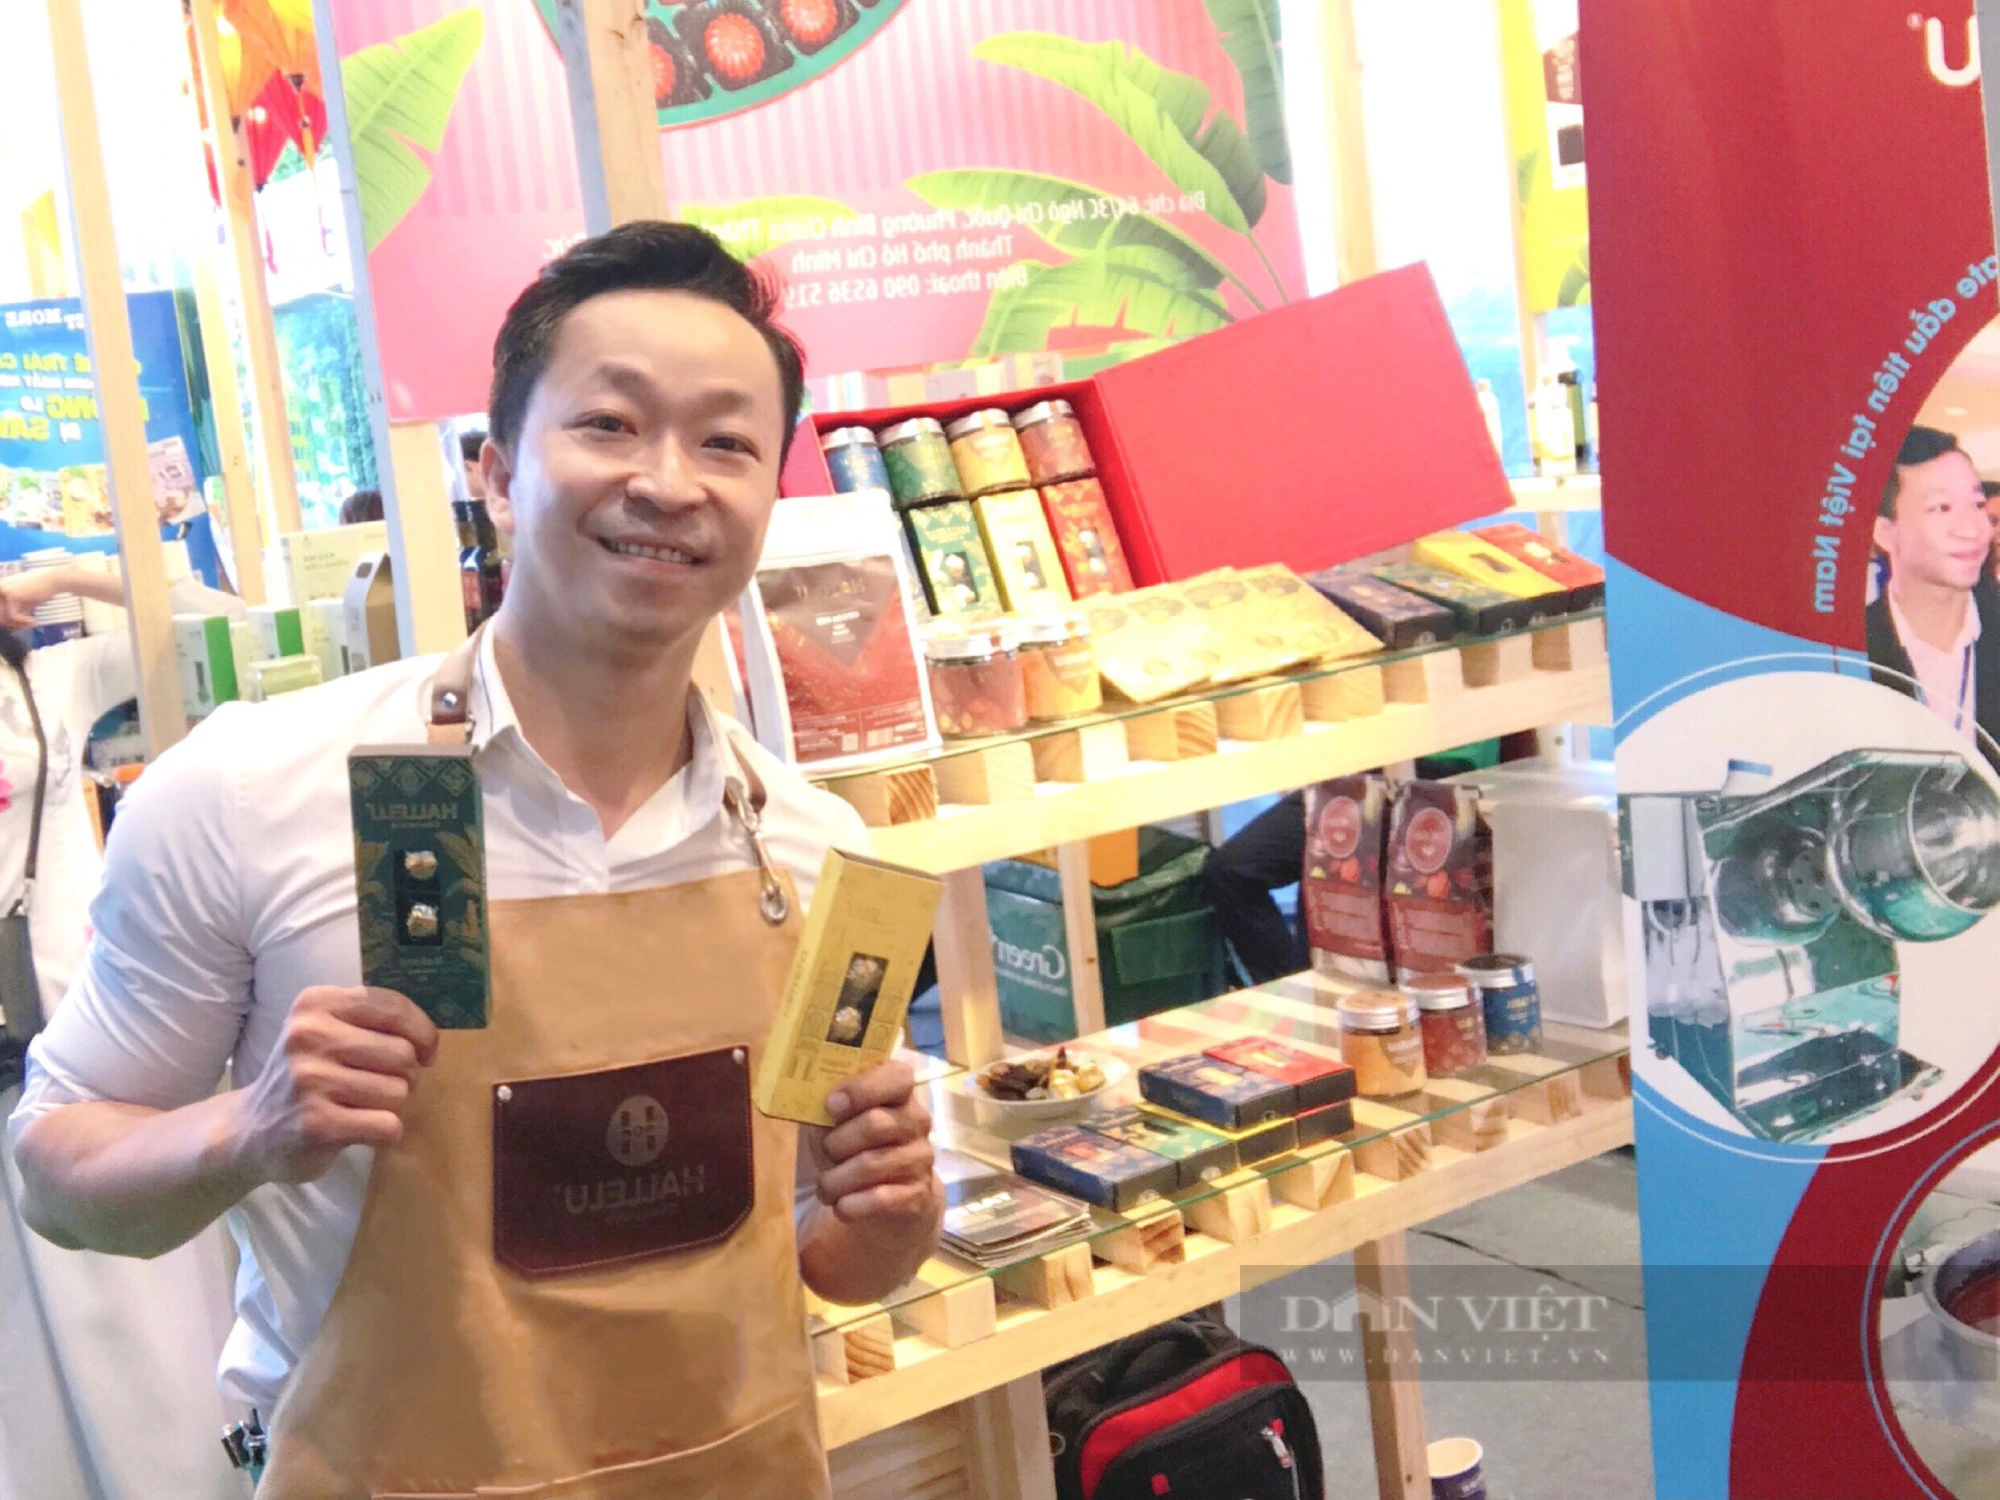 Kỹ sư chế tạo máy gia nhiệt chocolate đầu tiên của Việt Nam và câu chuyện khởi nghiệp với hạt ca cao- Ảnh 4.